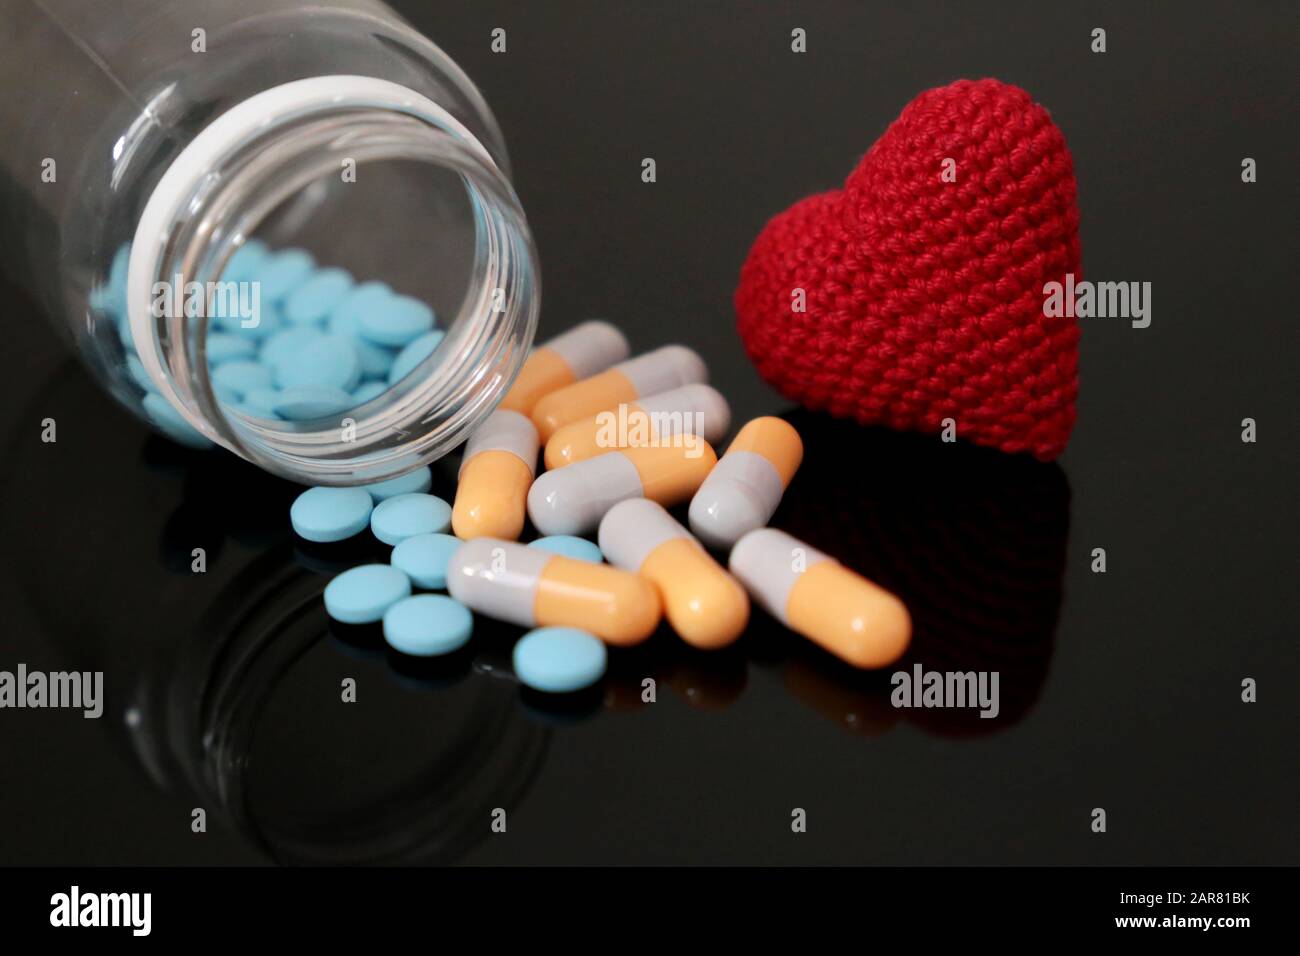 Pillole e cuore rosso lavorato a maglia su tavolo di vetro scuro, bottiglia con farmaco in capsule. Concetto di ipertensione, malattie cardiache, cardiologia, sangue pressur Foto Stock